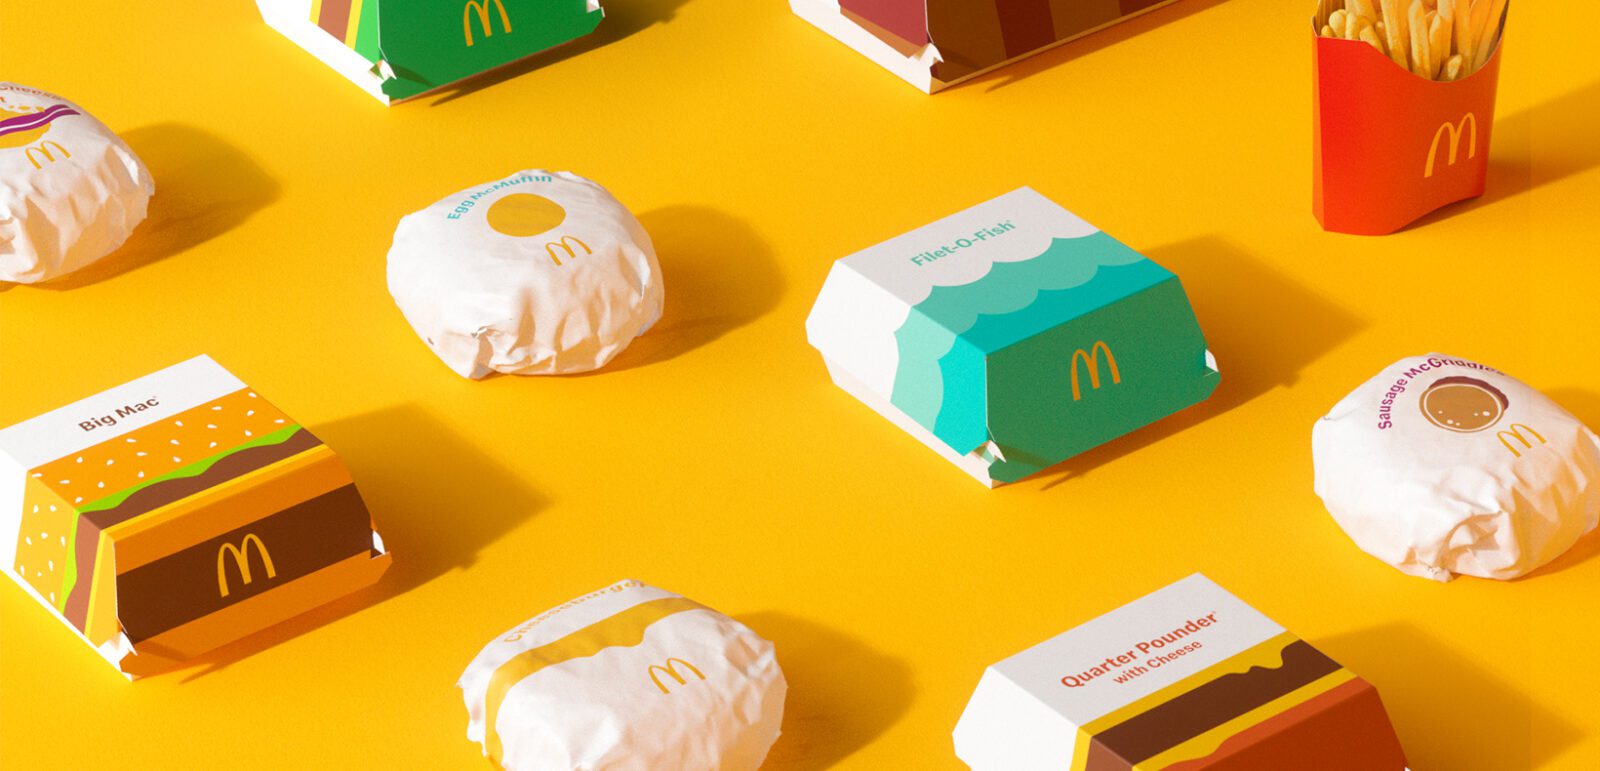 Gostou das novas embalagens globais do McDonald's? Grafismos prevalecem